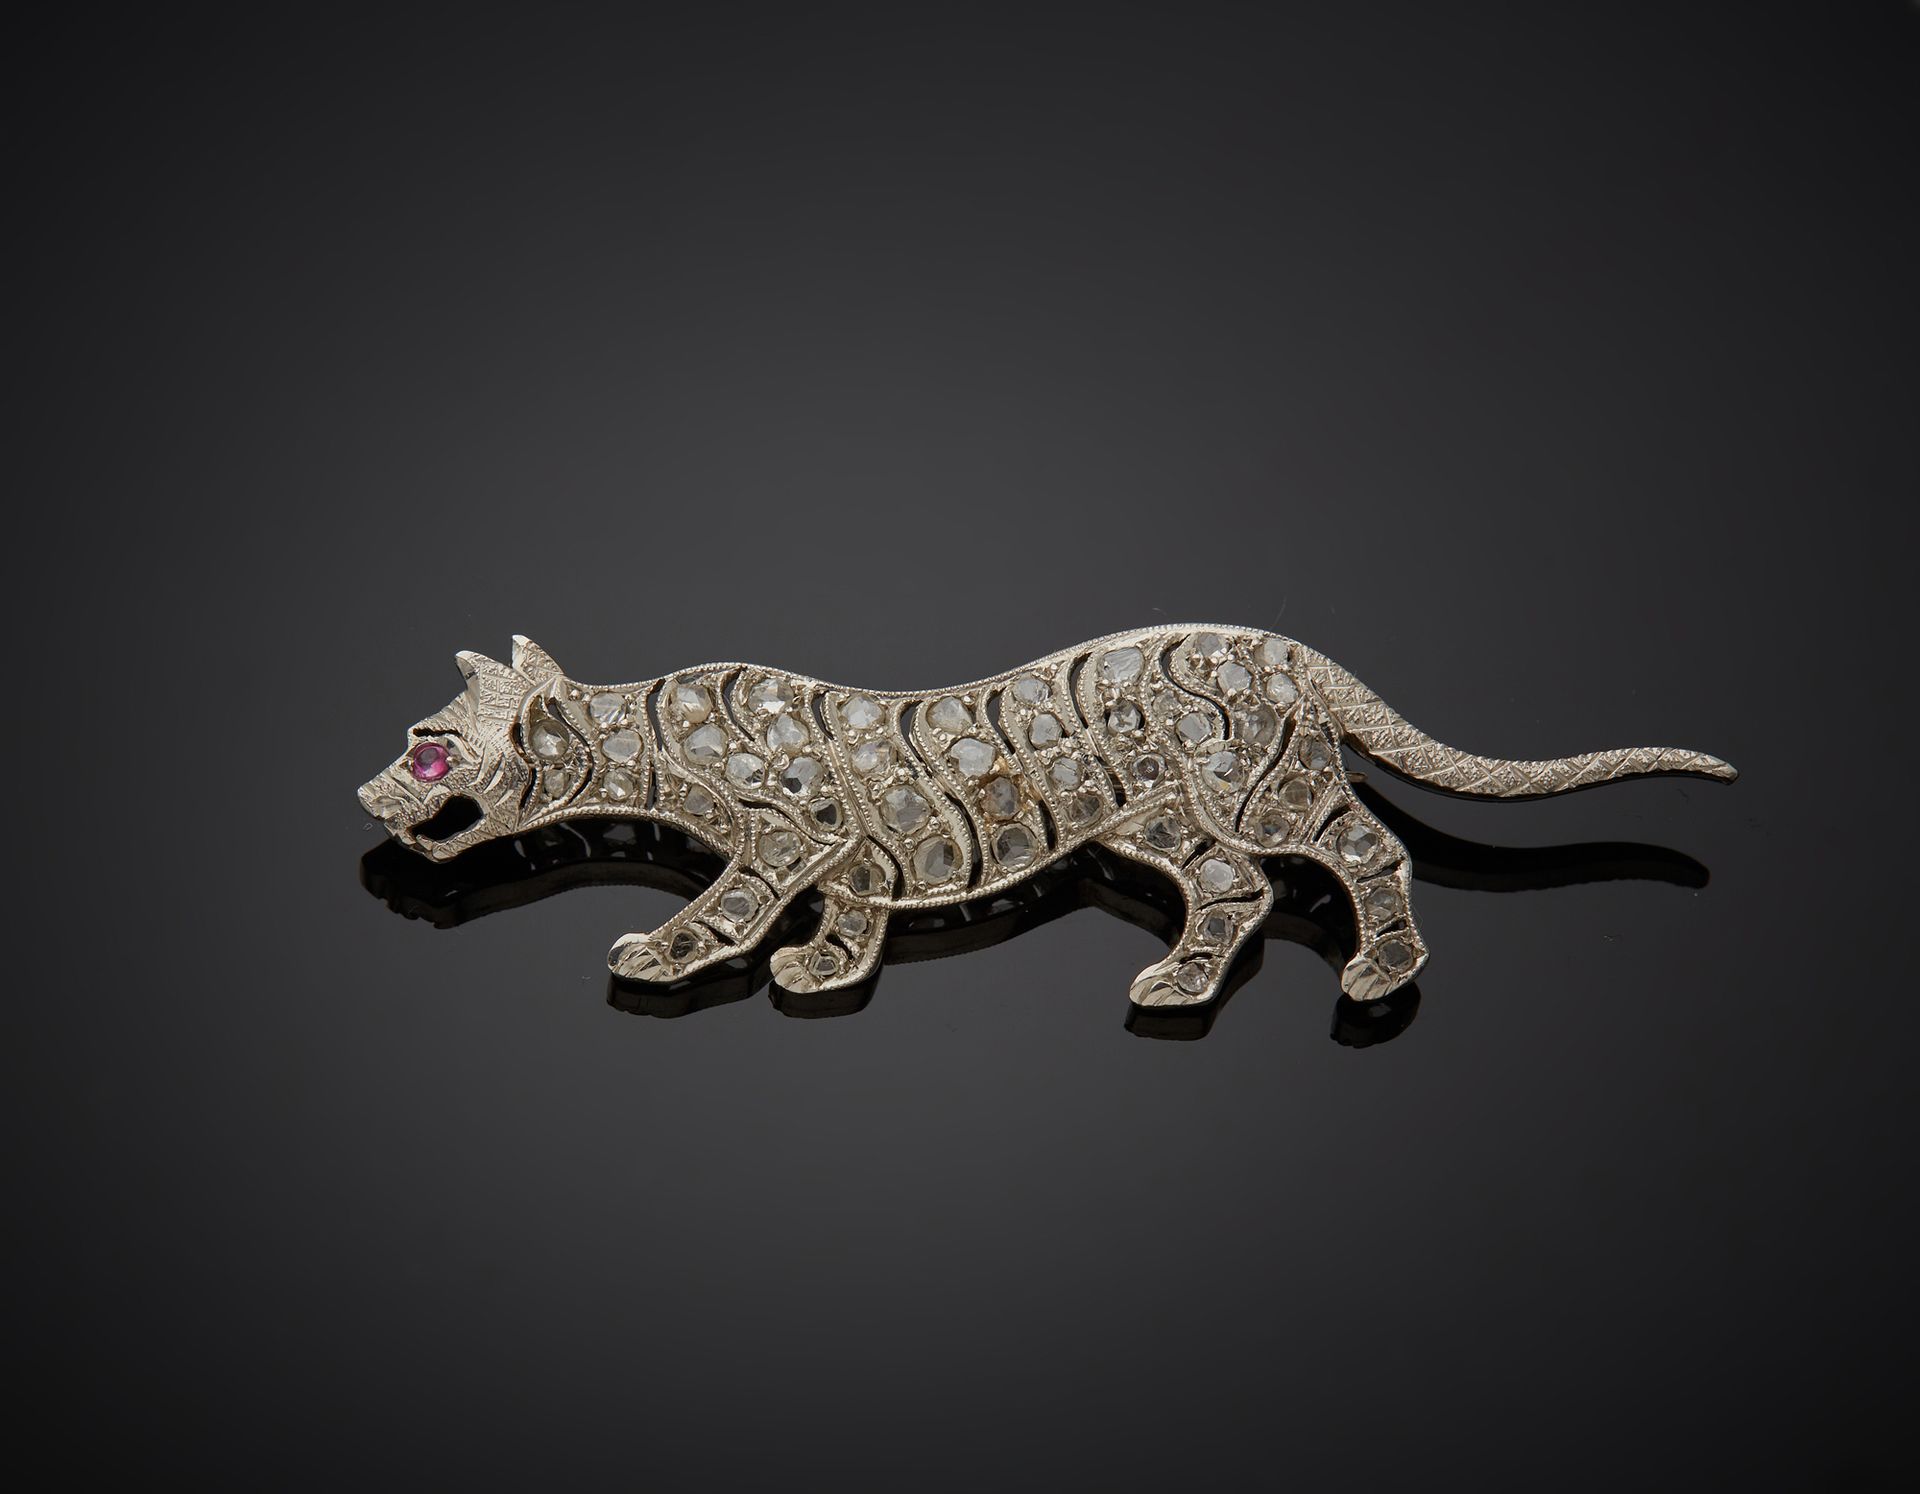 Null 一枚850‰的铂金胸针，为猫科动物的形状，有镂空的装饰，镶有玫瑰切割的钻石和一颗红色的石头。石头上镶嵌着种子。

L. 5 cm 毛重 4.70 g